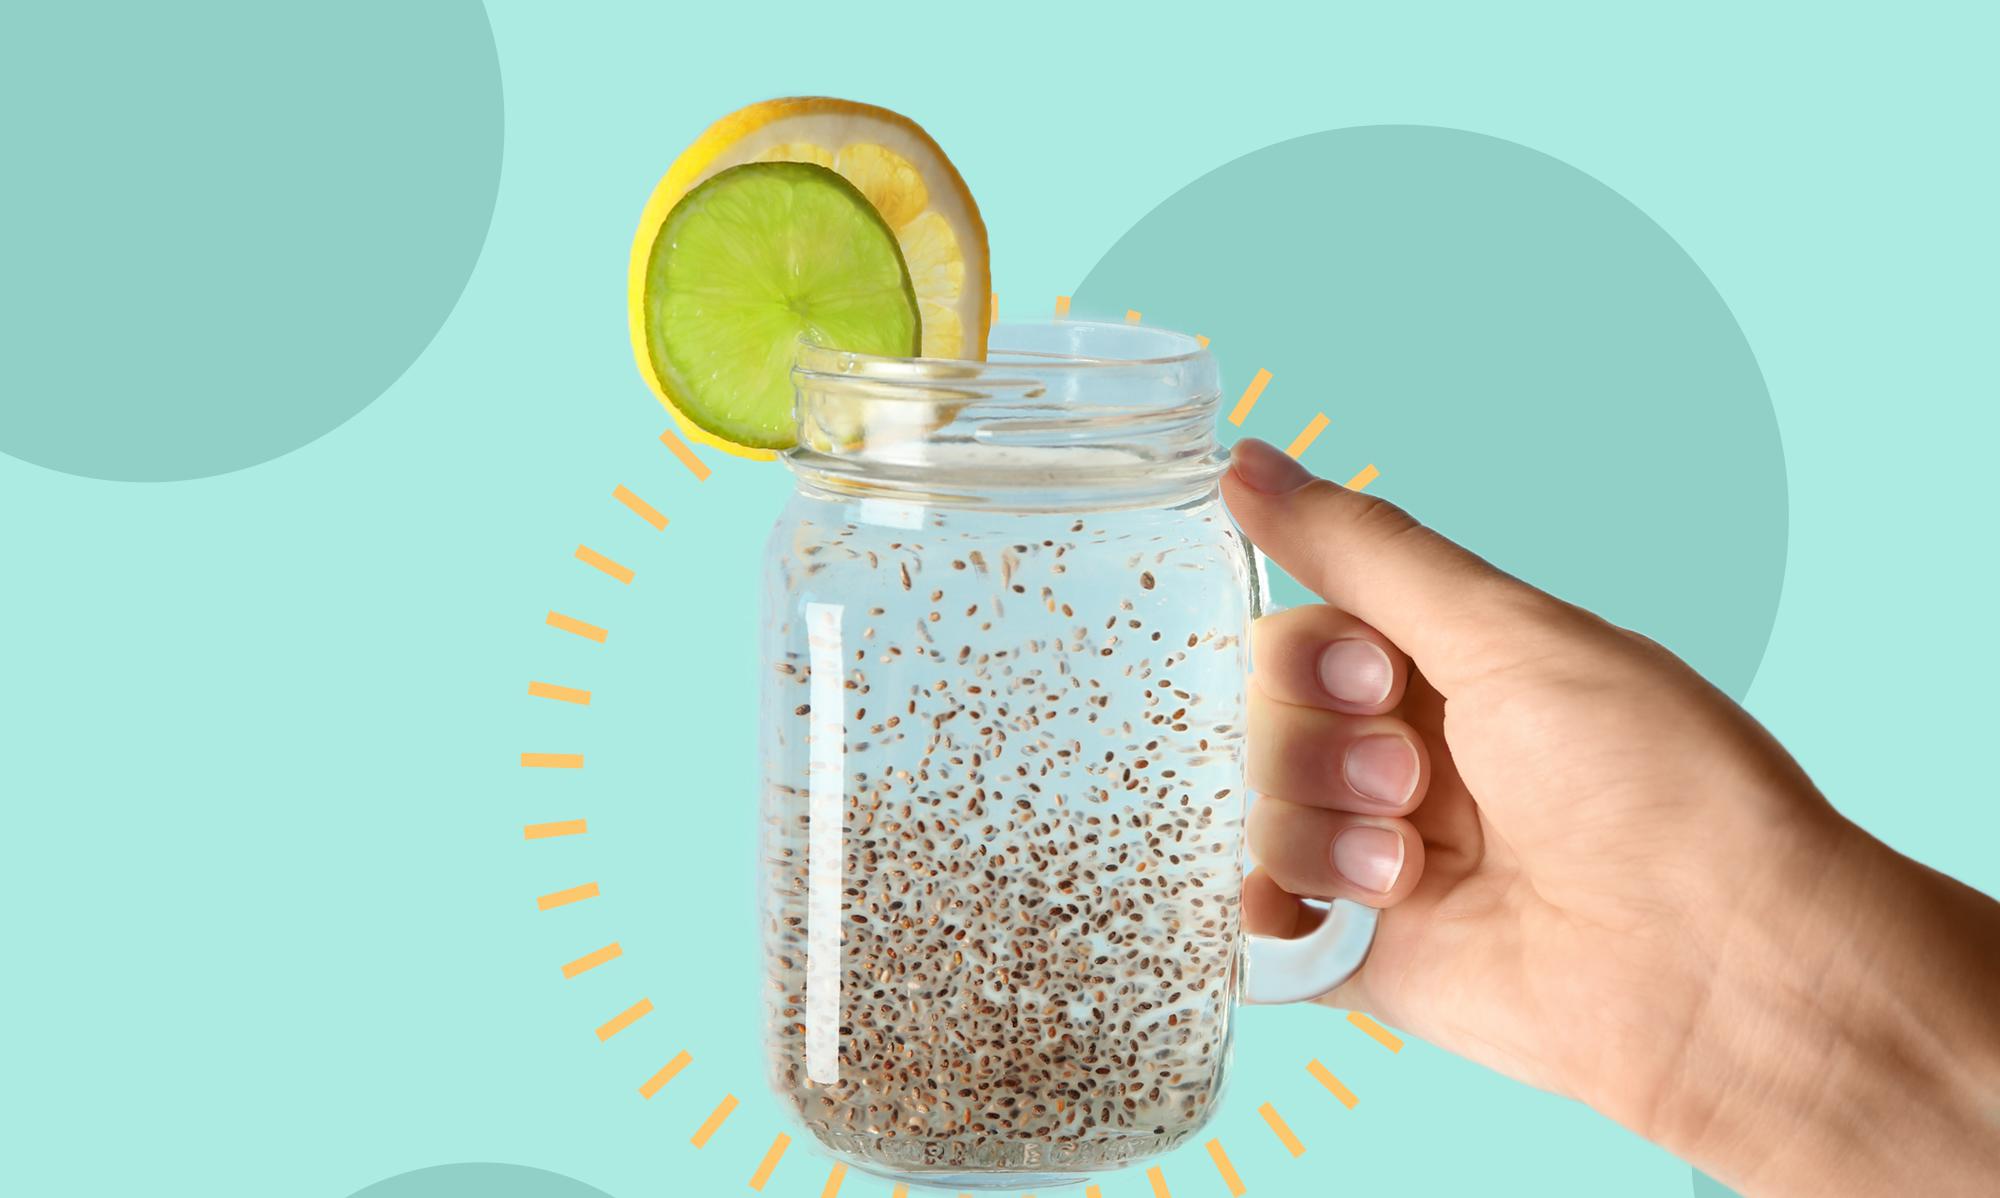 ¿Beber agua de semillas de chía puede realmente ayudar a perder peso?